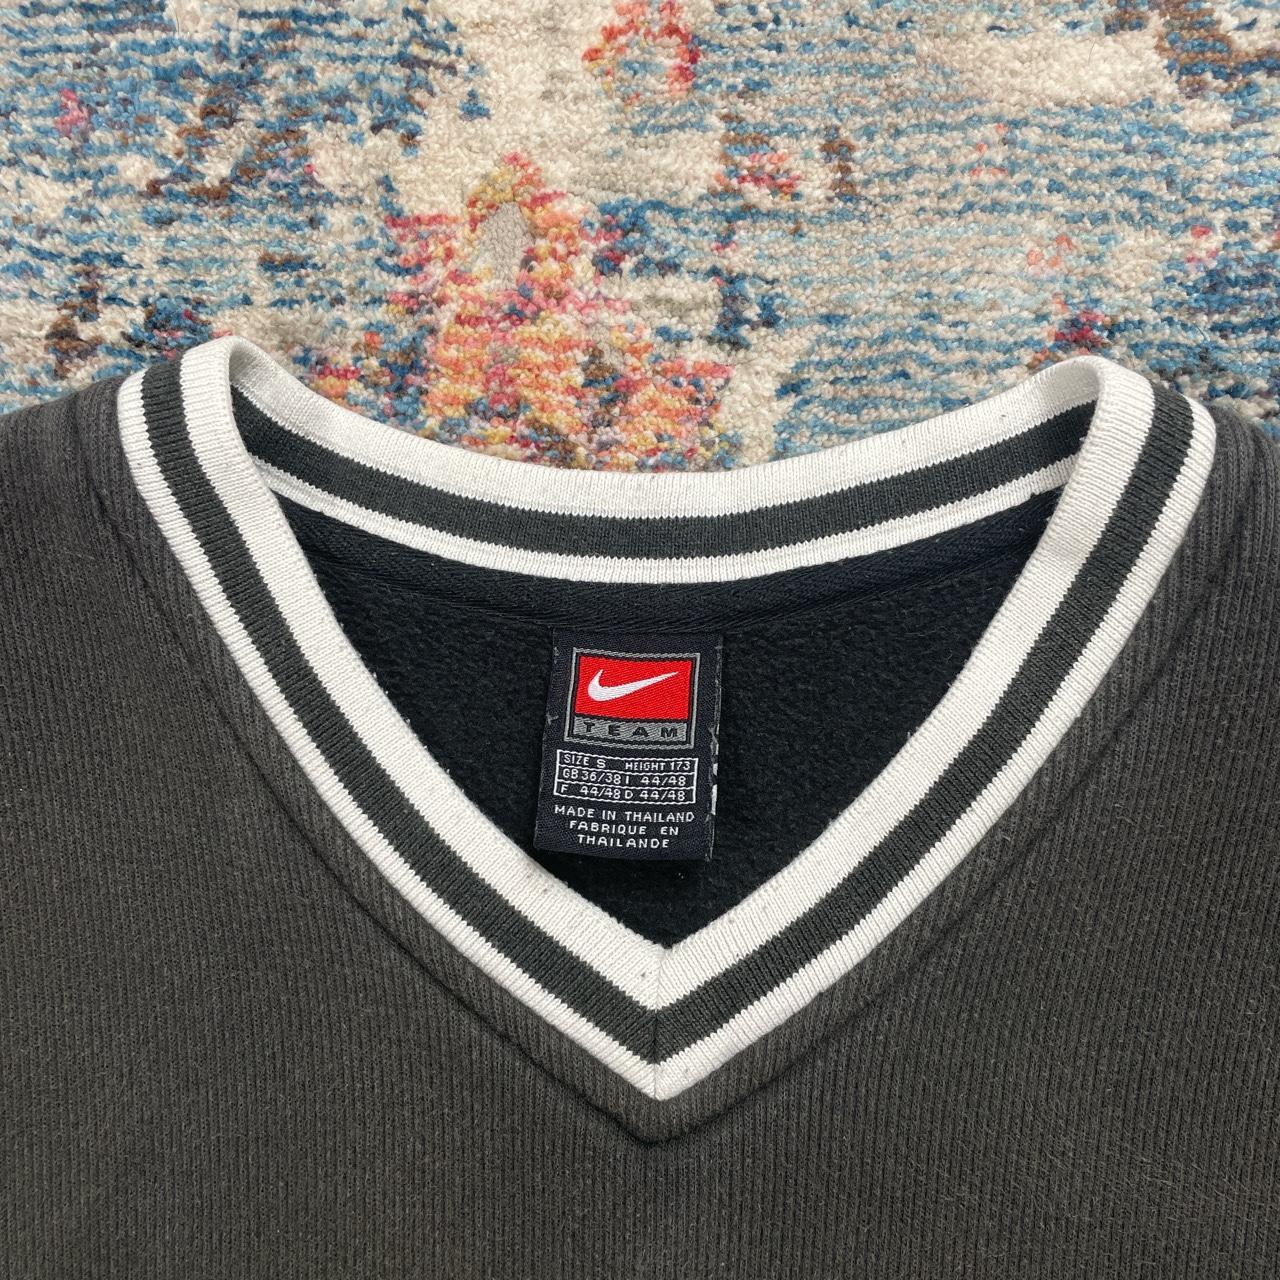 Vintage Nike Black Uptempo Sweatshirt